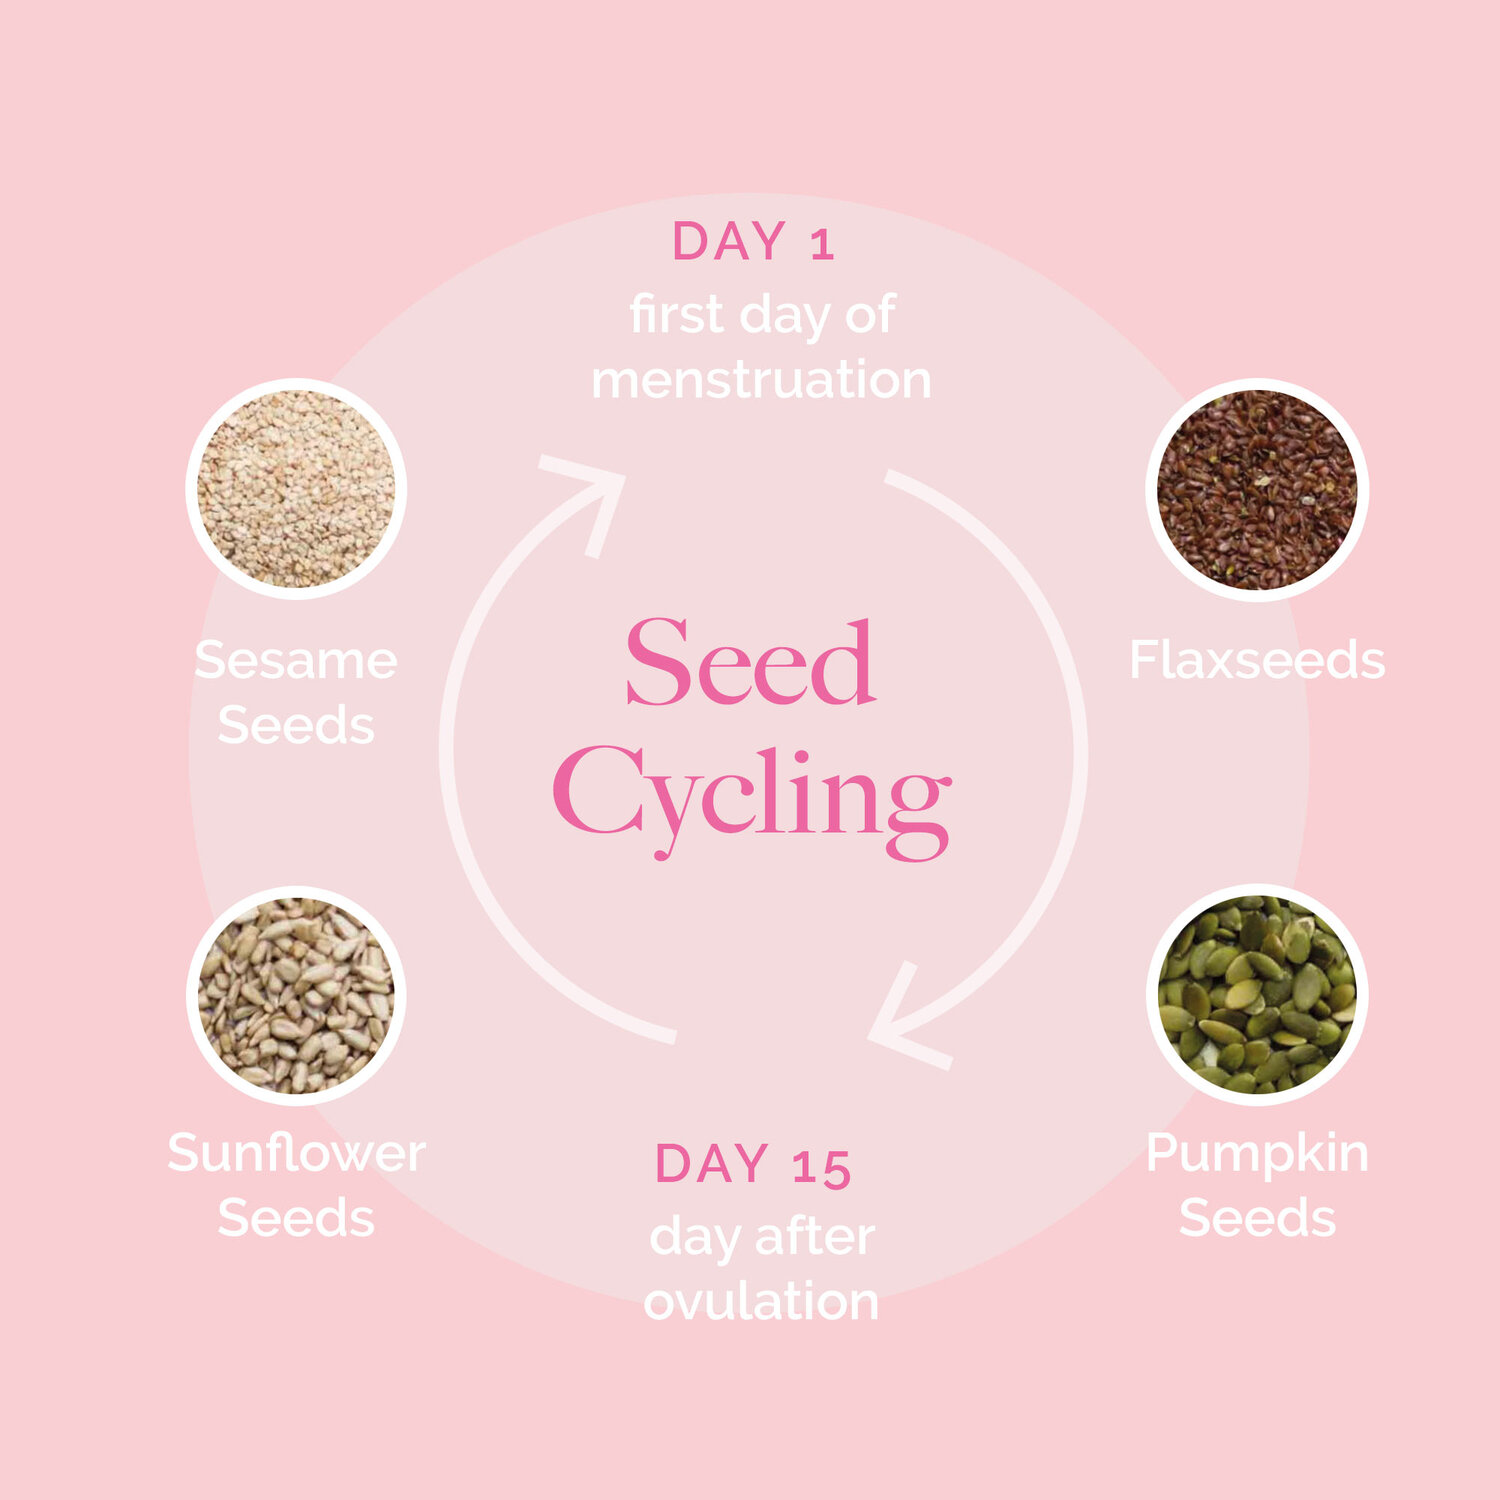 Sesame seeds benefits for menstruation